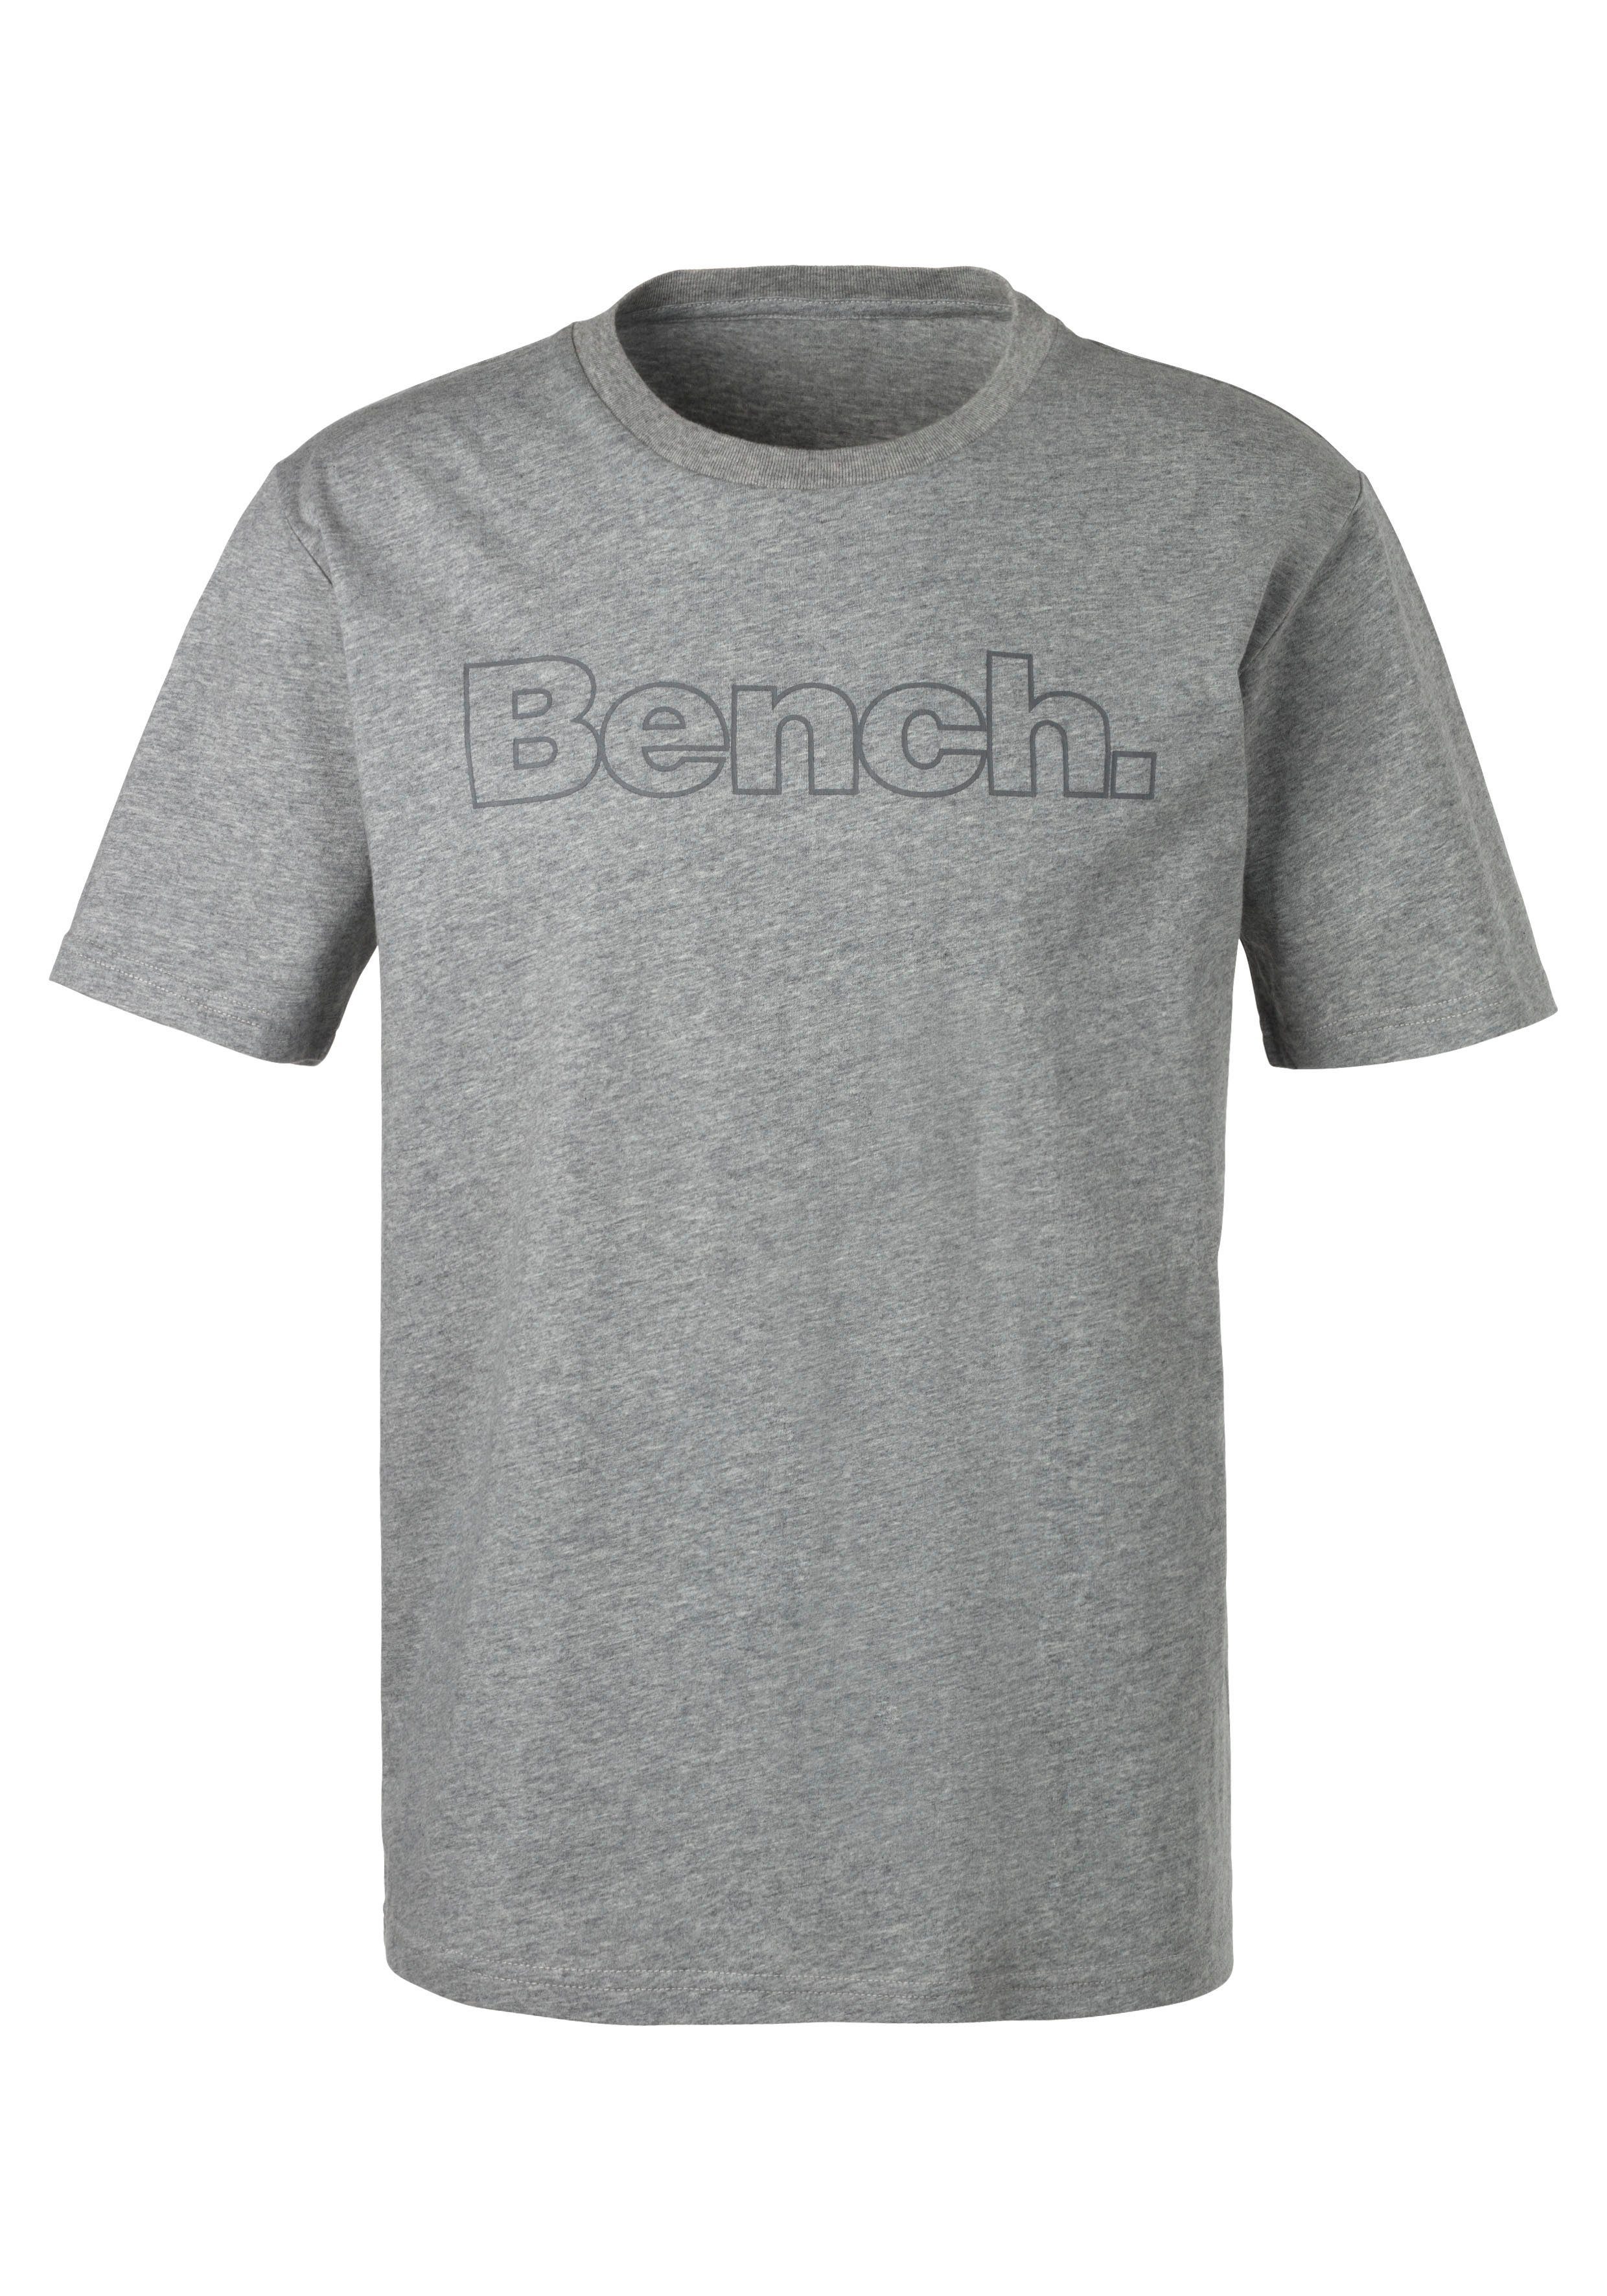 (2-tlg) Bench. Bench. mit vorn navy Print grau-meliert, Loungewear T-Shirt